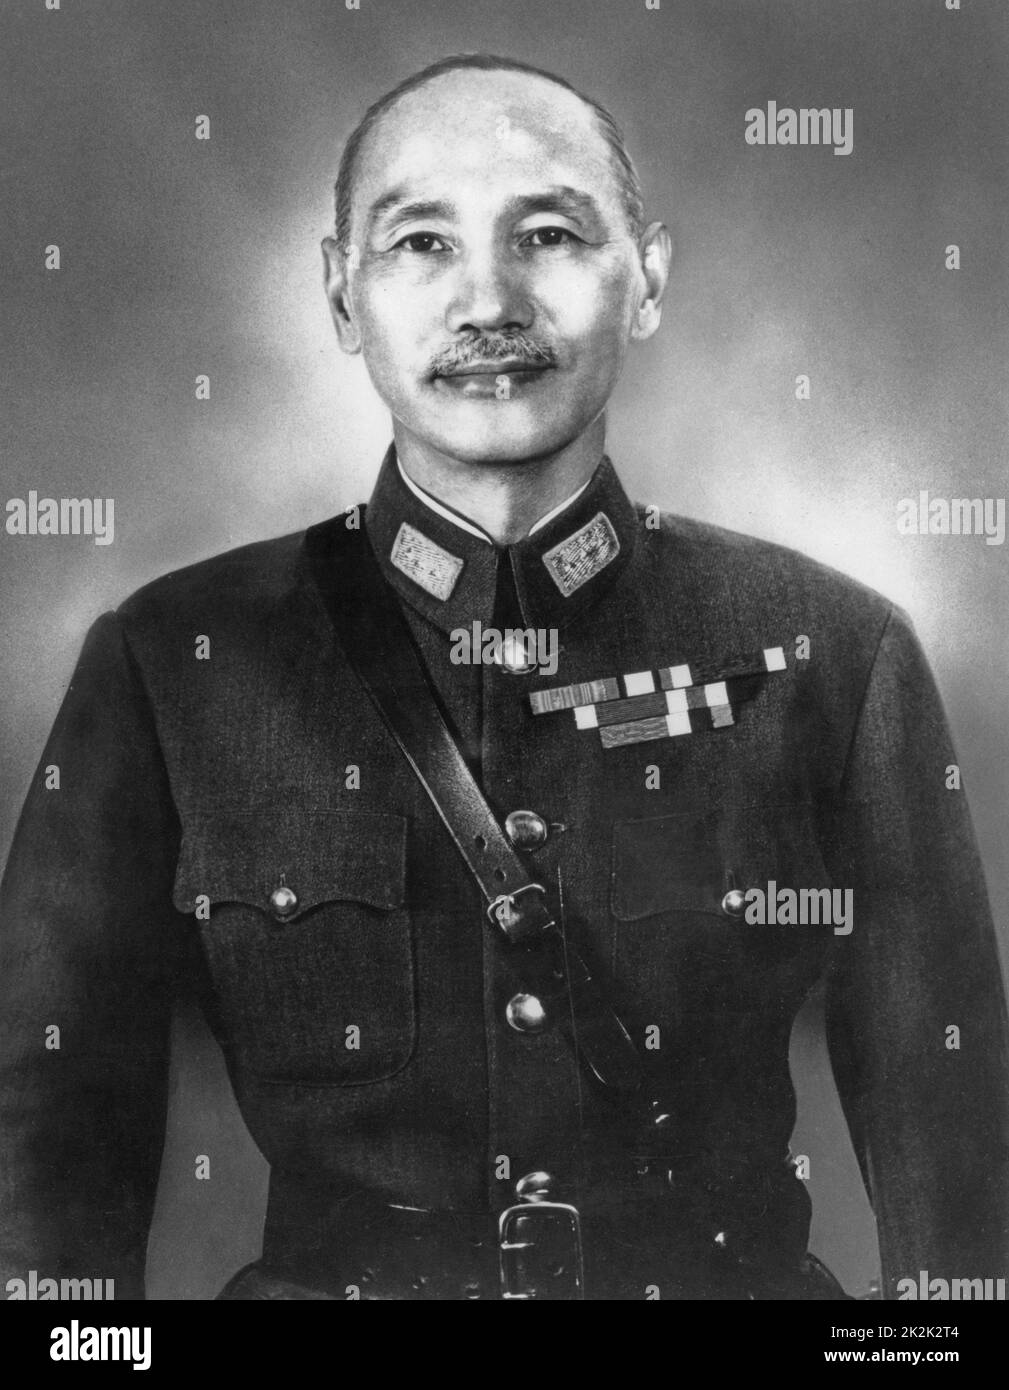 Ritratto ufficiale di Chiang Kai-shek, militare cinese e statista rappresentante del Kuomintang. 1945 Foto Stock